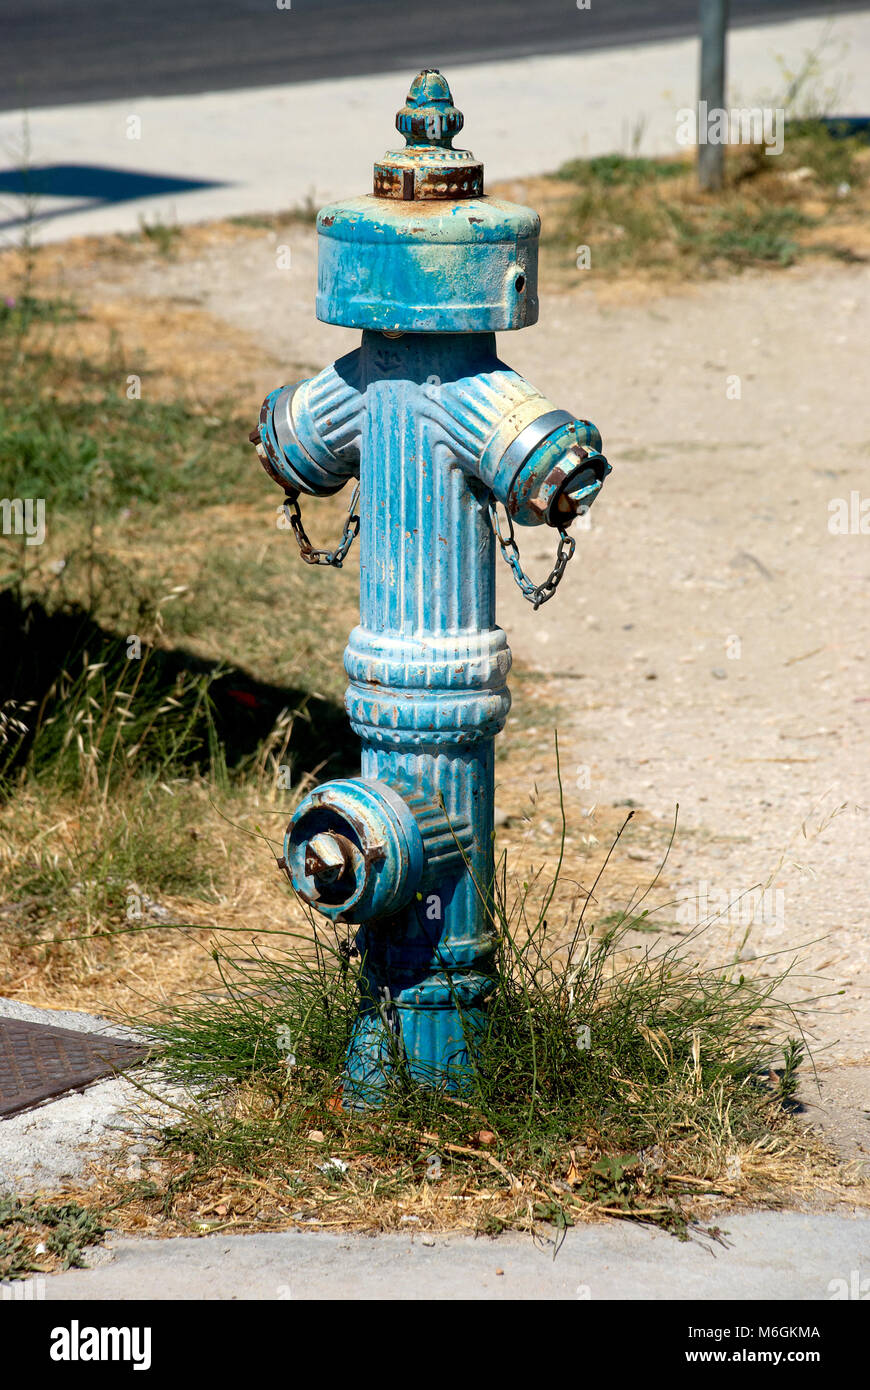 Ancienne borne d'incendie bleue située sur une pelouse Banque D'Images